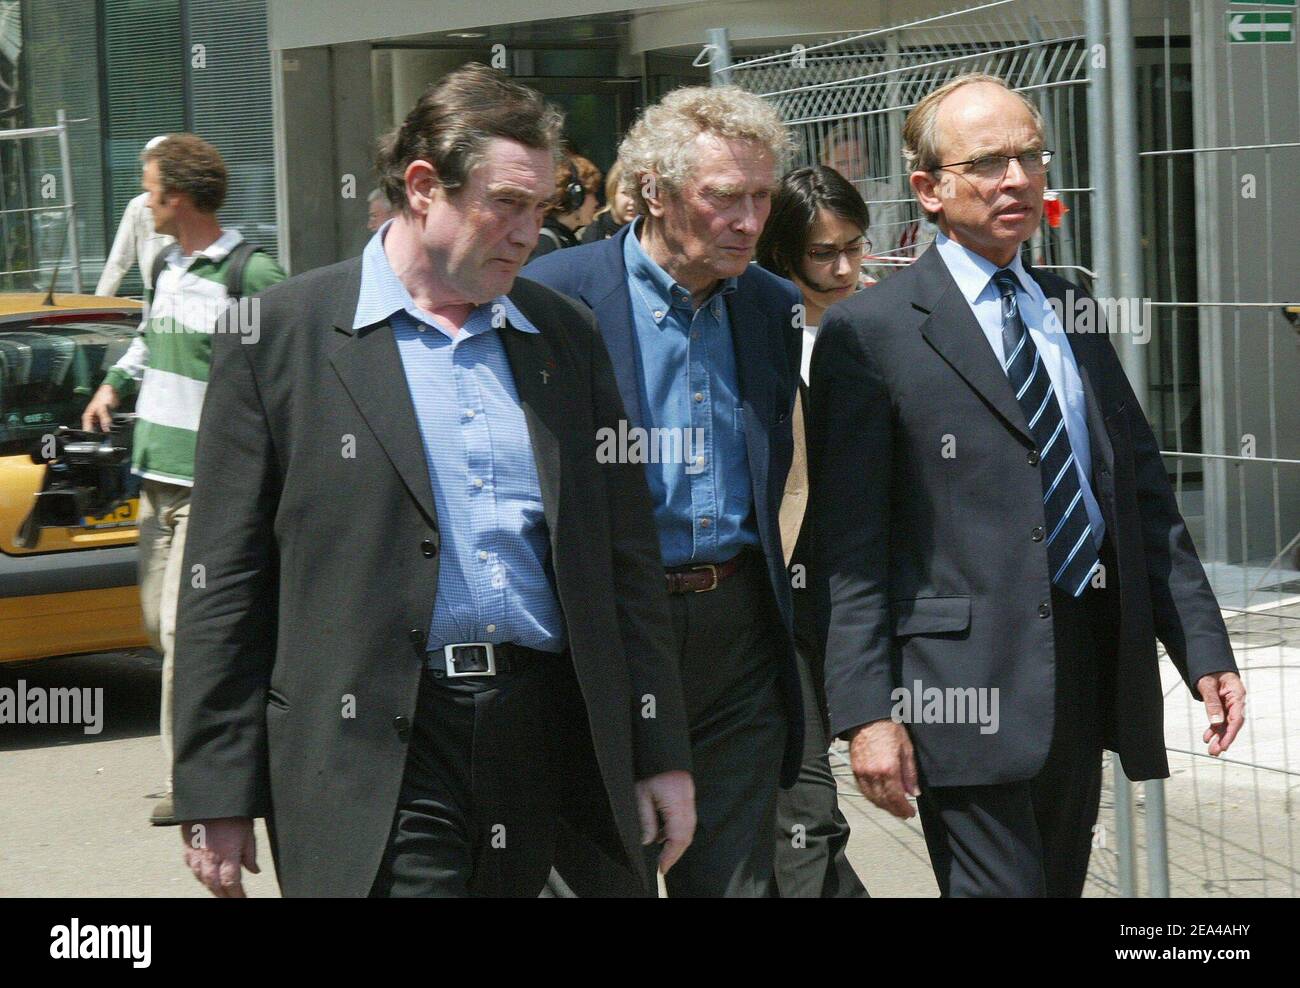 Le père François Lefort (l) et ses avocats, Maître Jean-Yves Lienard (c)  arrivent au tribunal de Nanterre près de Paris, en France, le deuxième jour  de son procès, accusés de viol sur